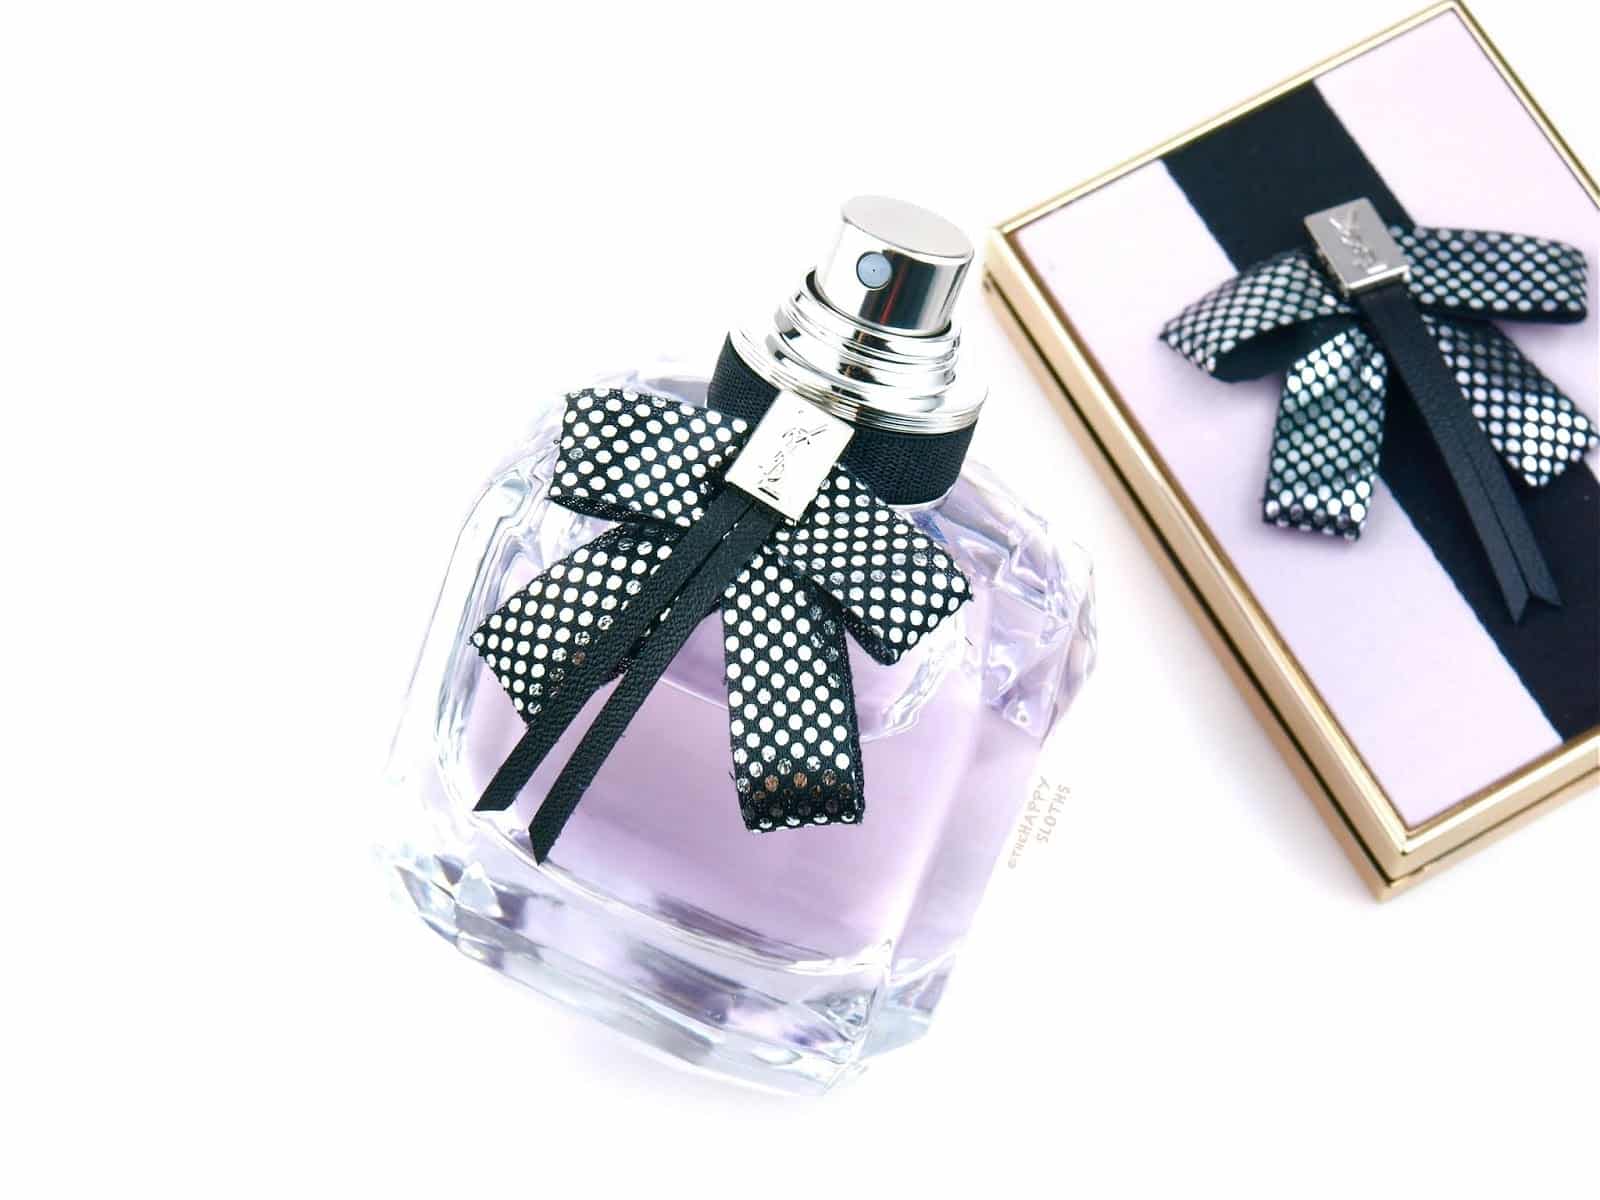 Ysl Yves Saint Laurent Mon Paris Couture Eau De Parfum Review 1 Min